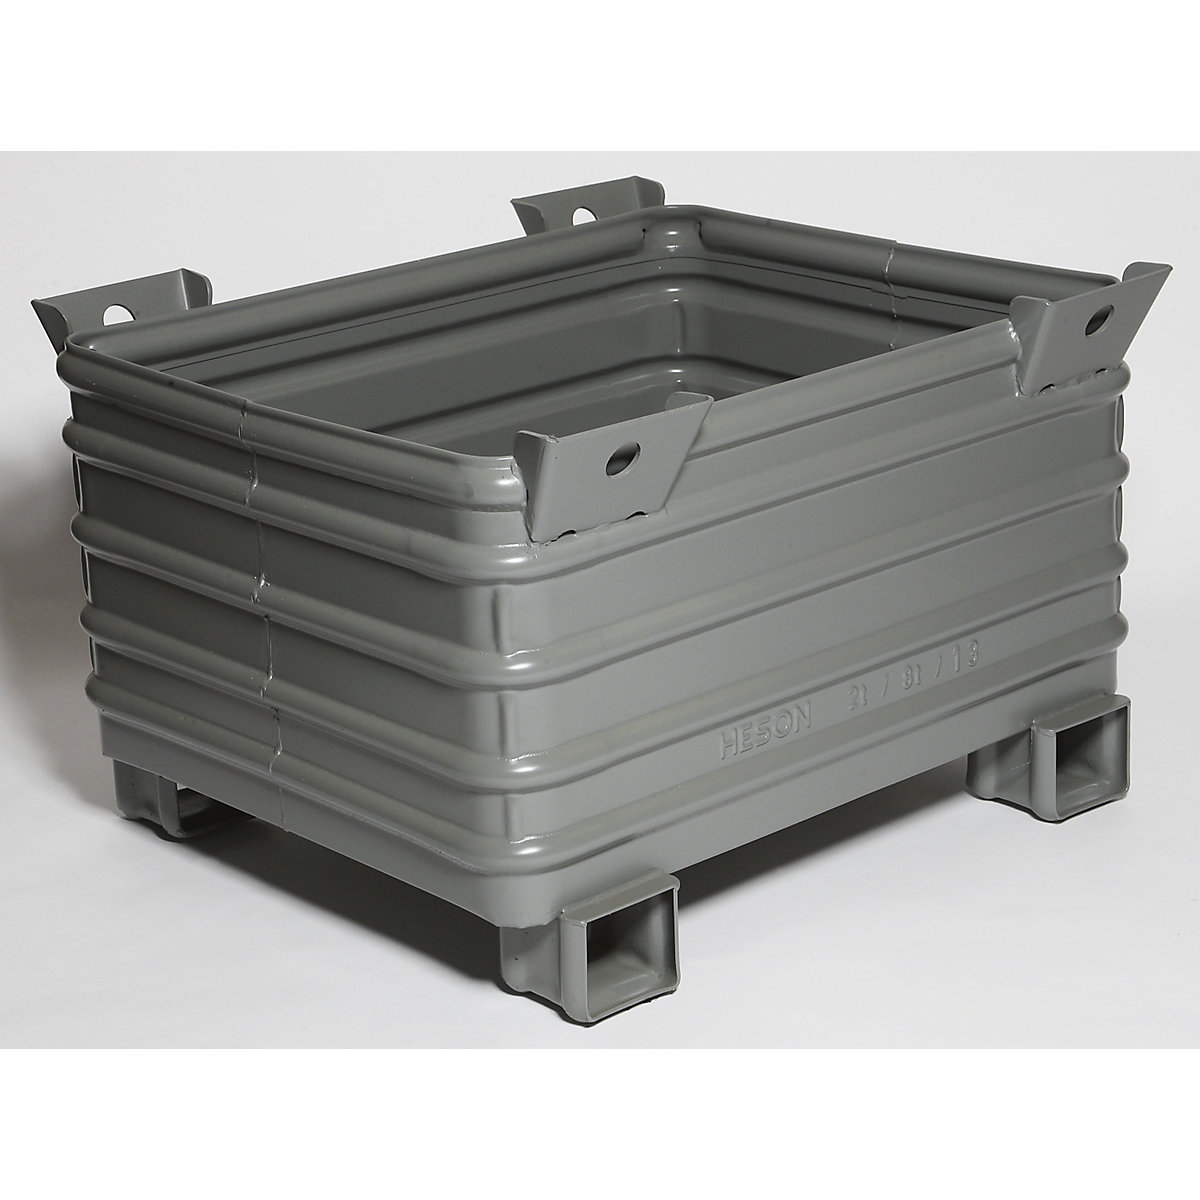 Heson – Container stivuibil pentru sarcini grele, lăț. x lung. 800 x 1000 mm, cu picioare în formă de U, lăcuit gri, minimum 1 buc.